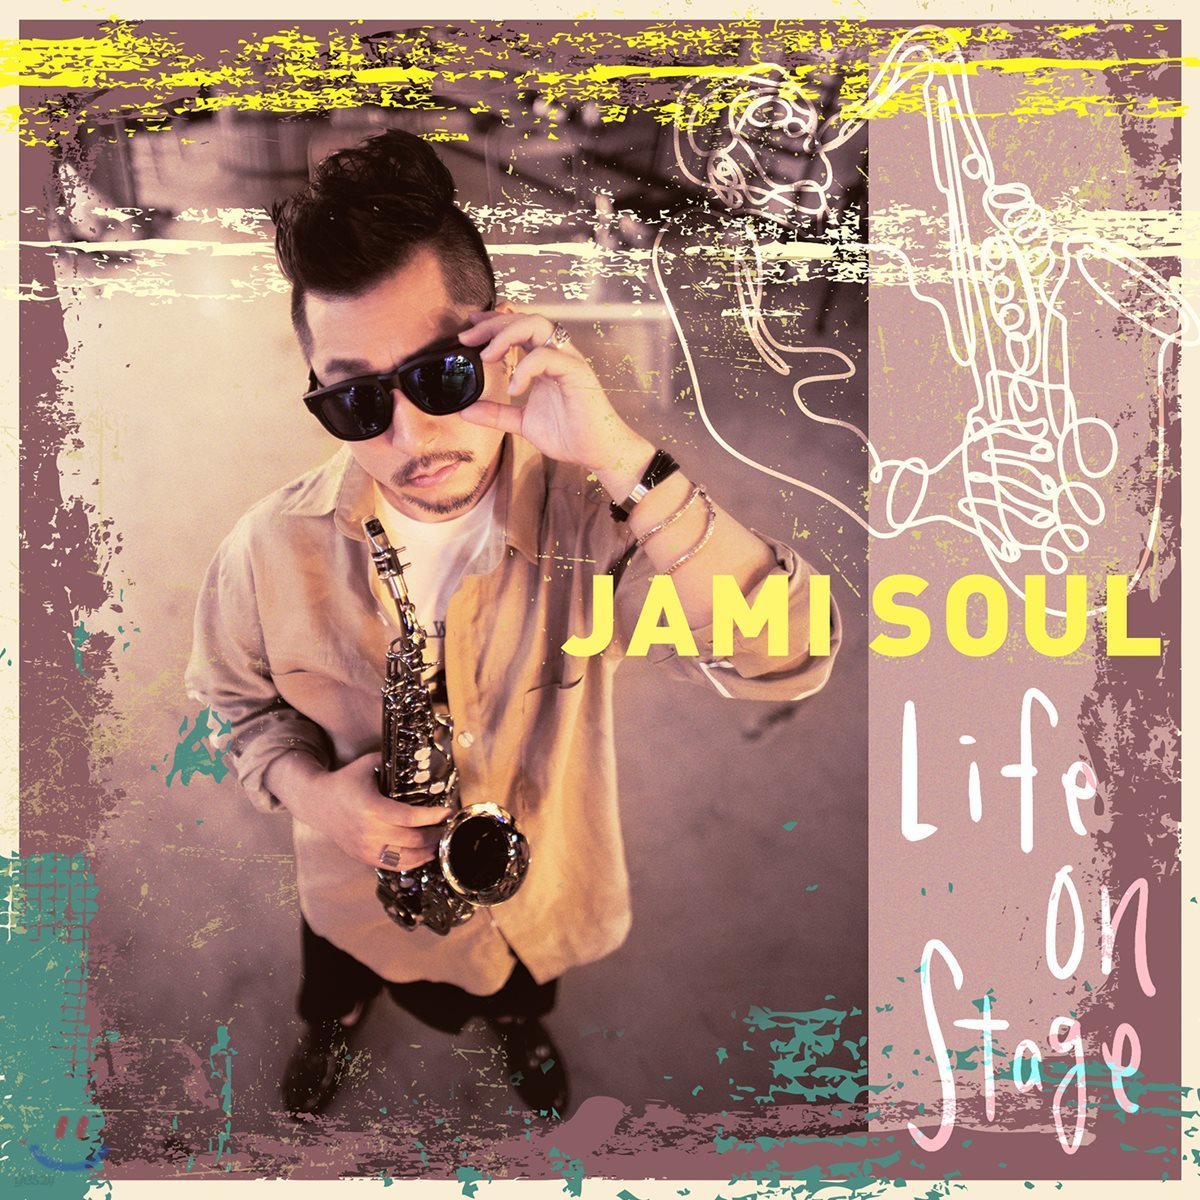 자미 소울 (Jami Soul) 1집 - Life On Stage